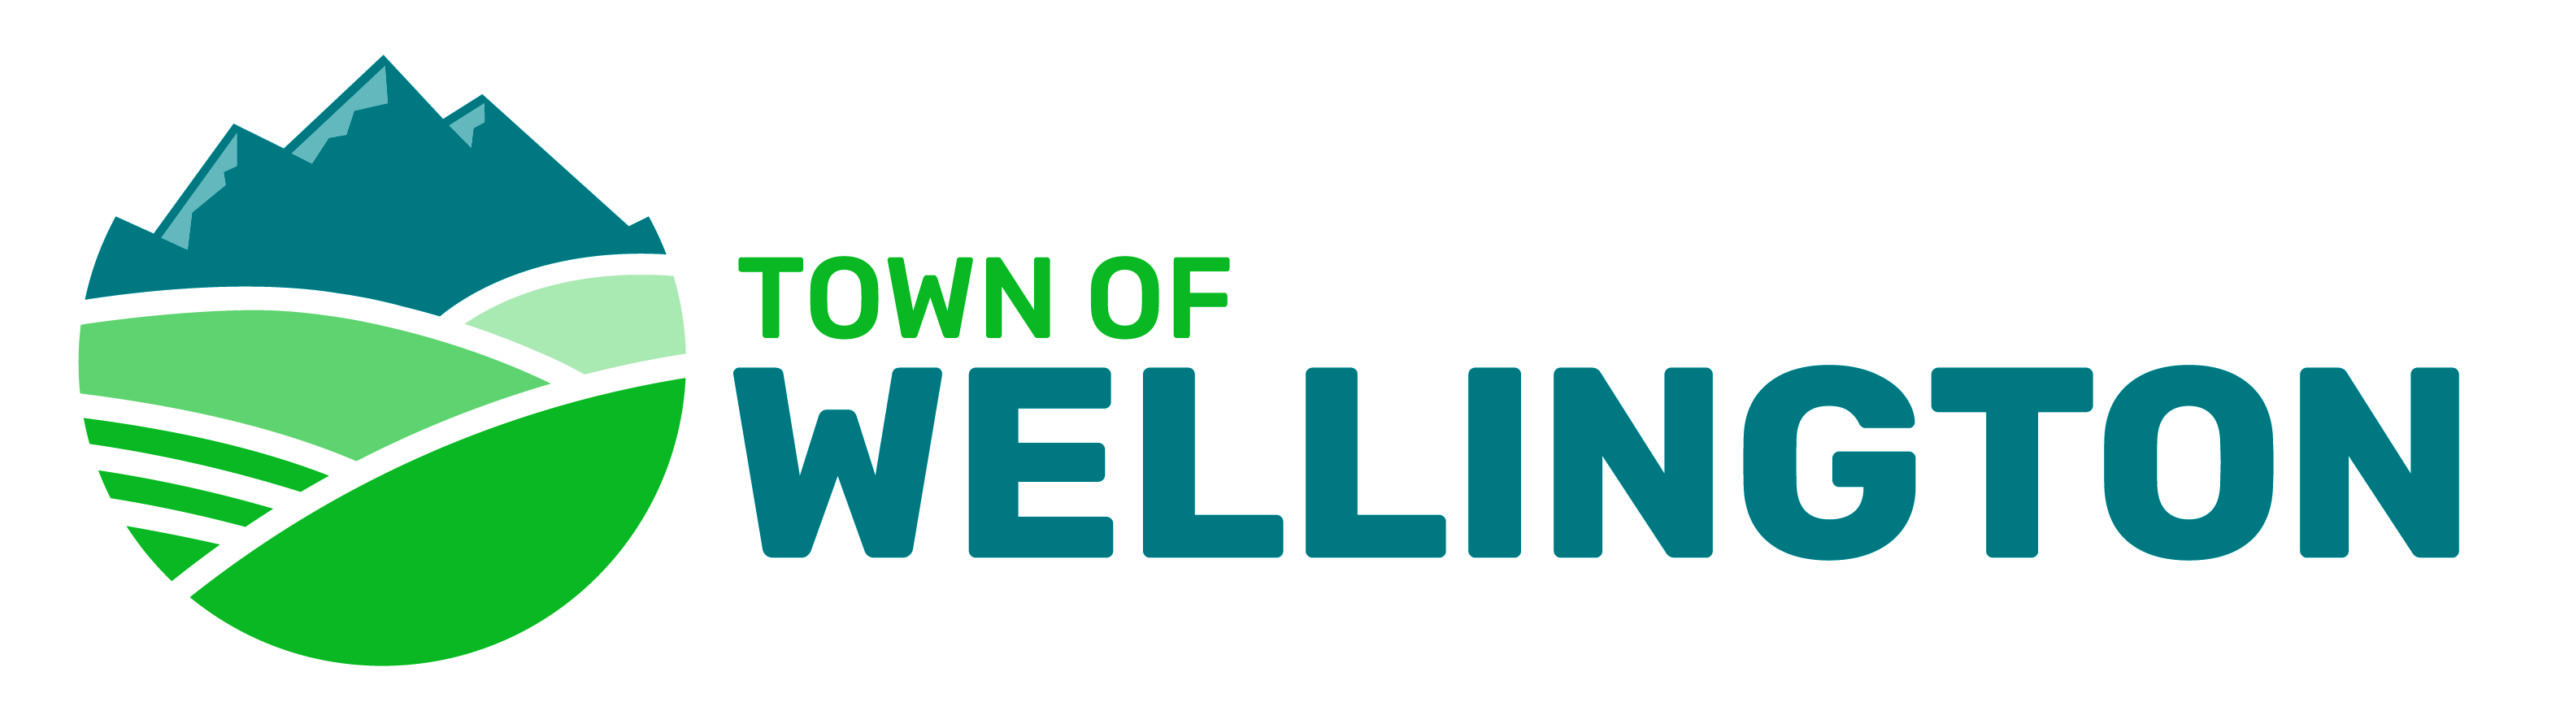 Town of Wellington Colorado logo